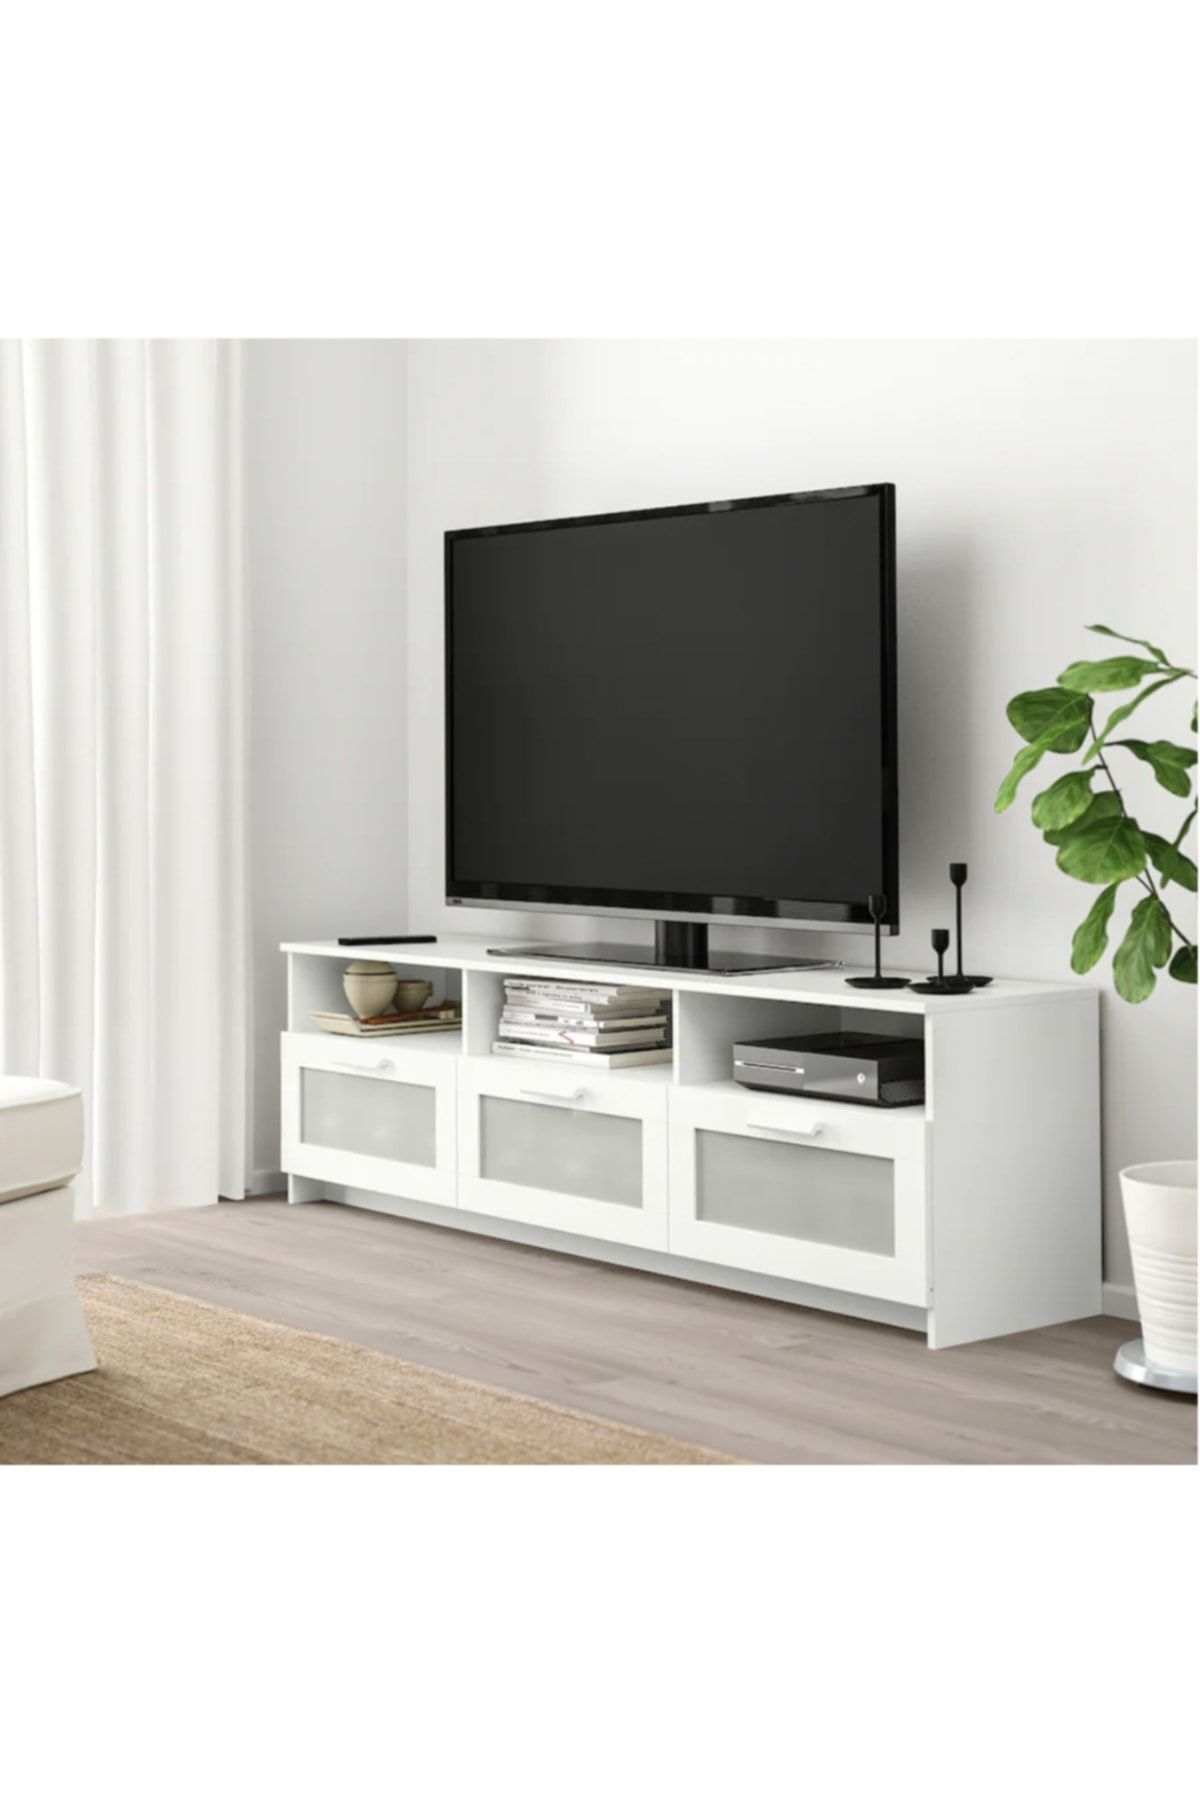 IKEA Tv Sehpası - Brımnes